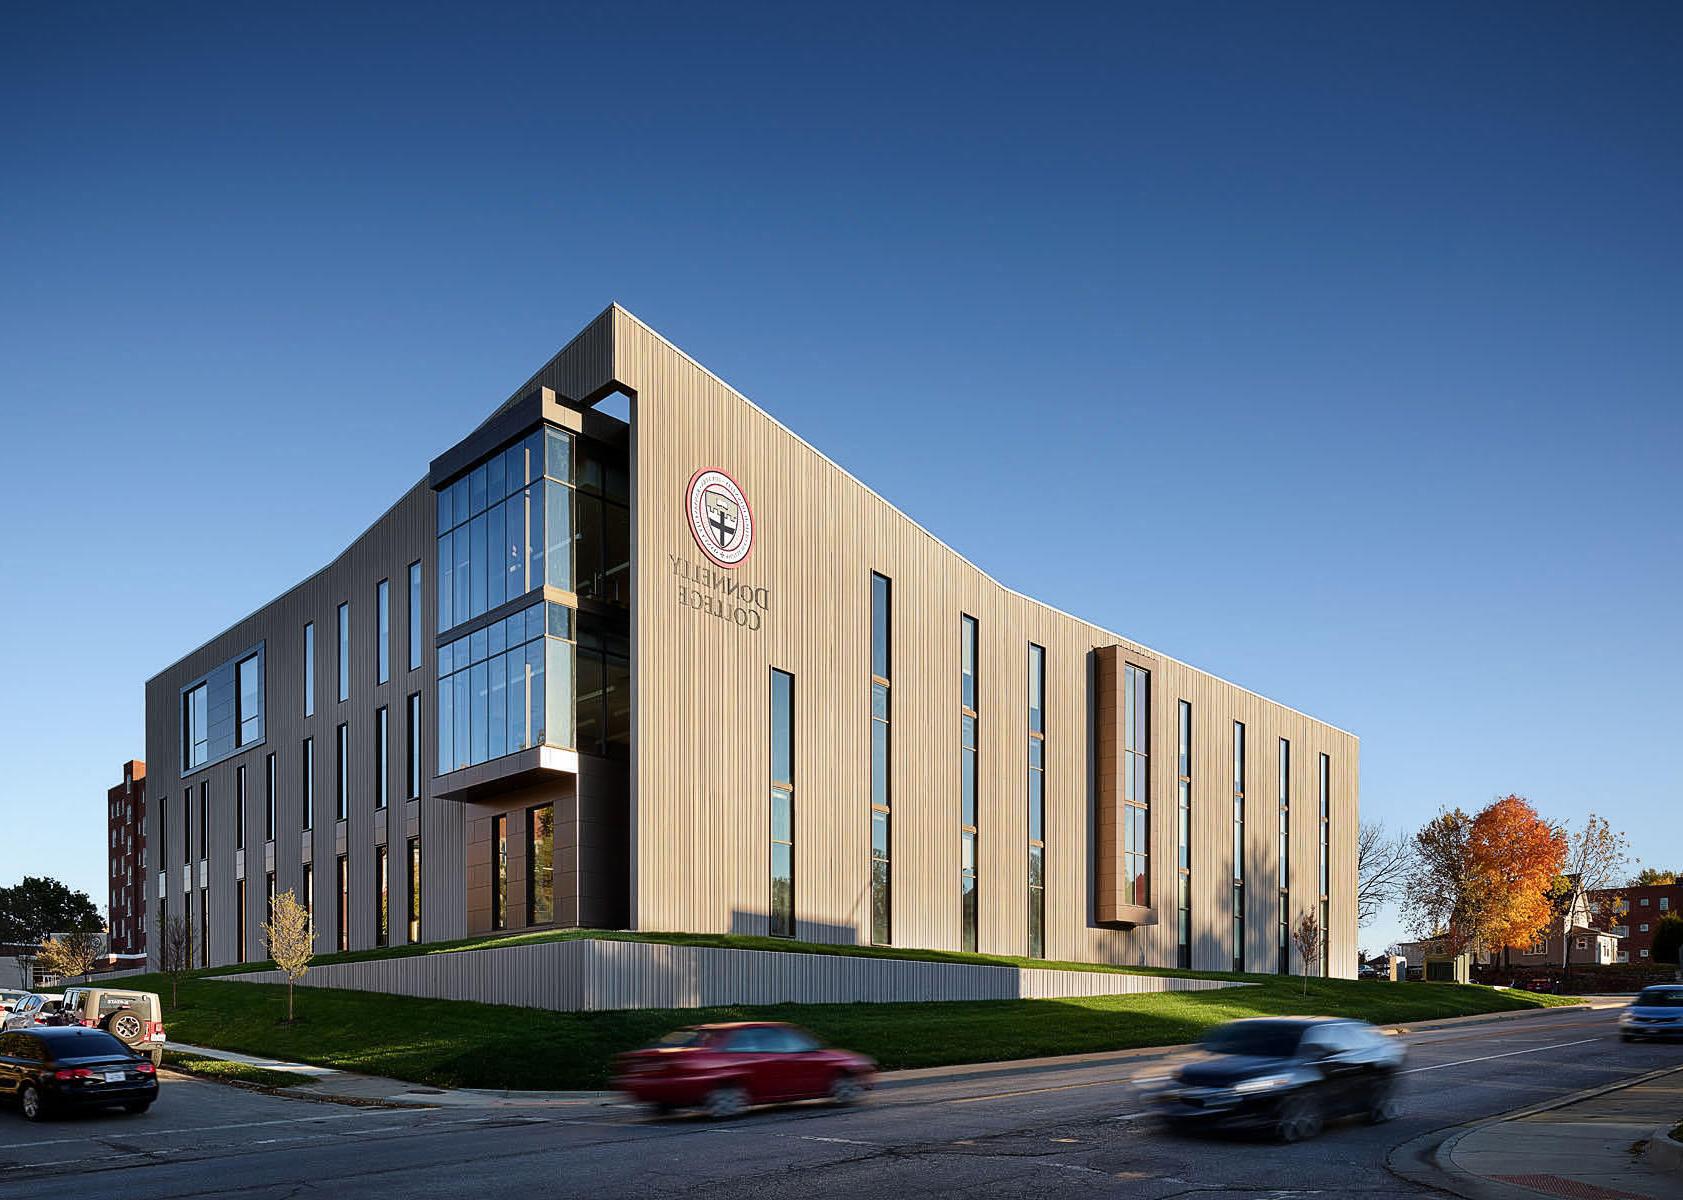 New Academic Building